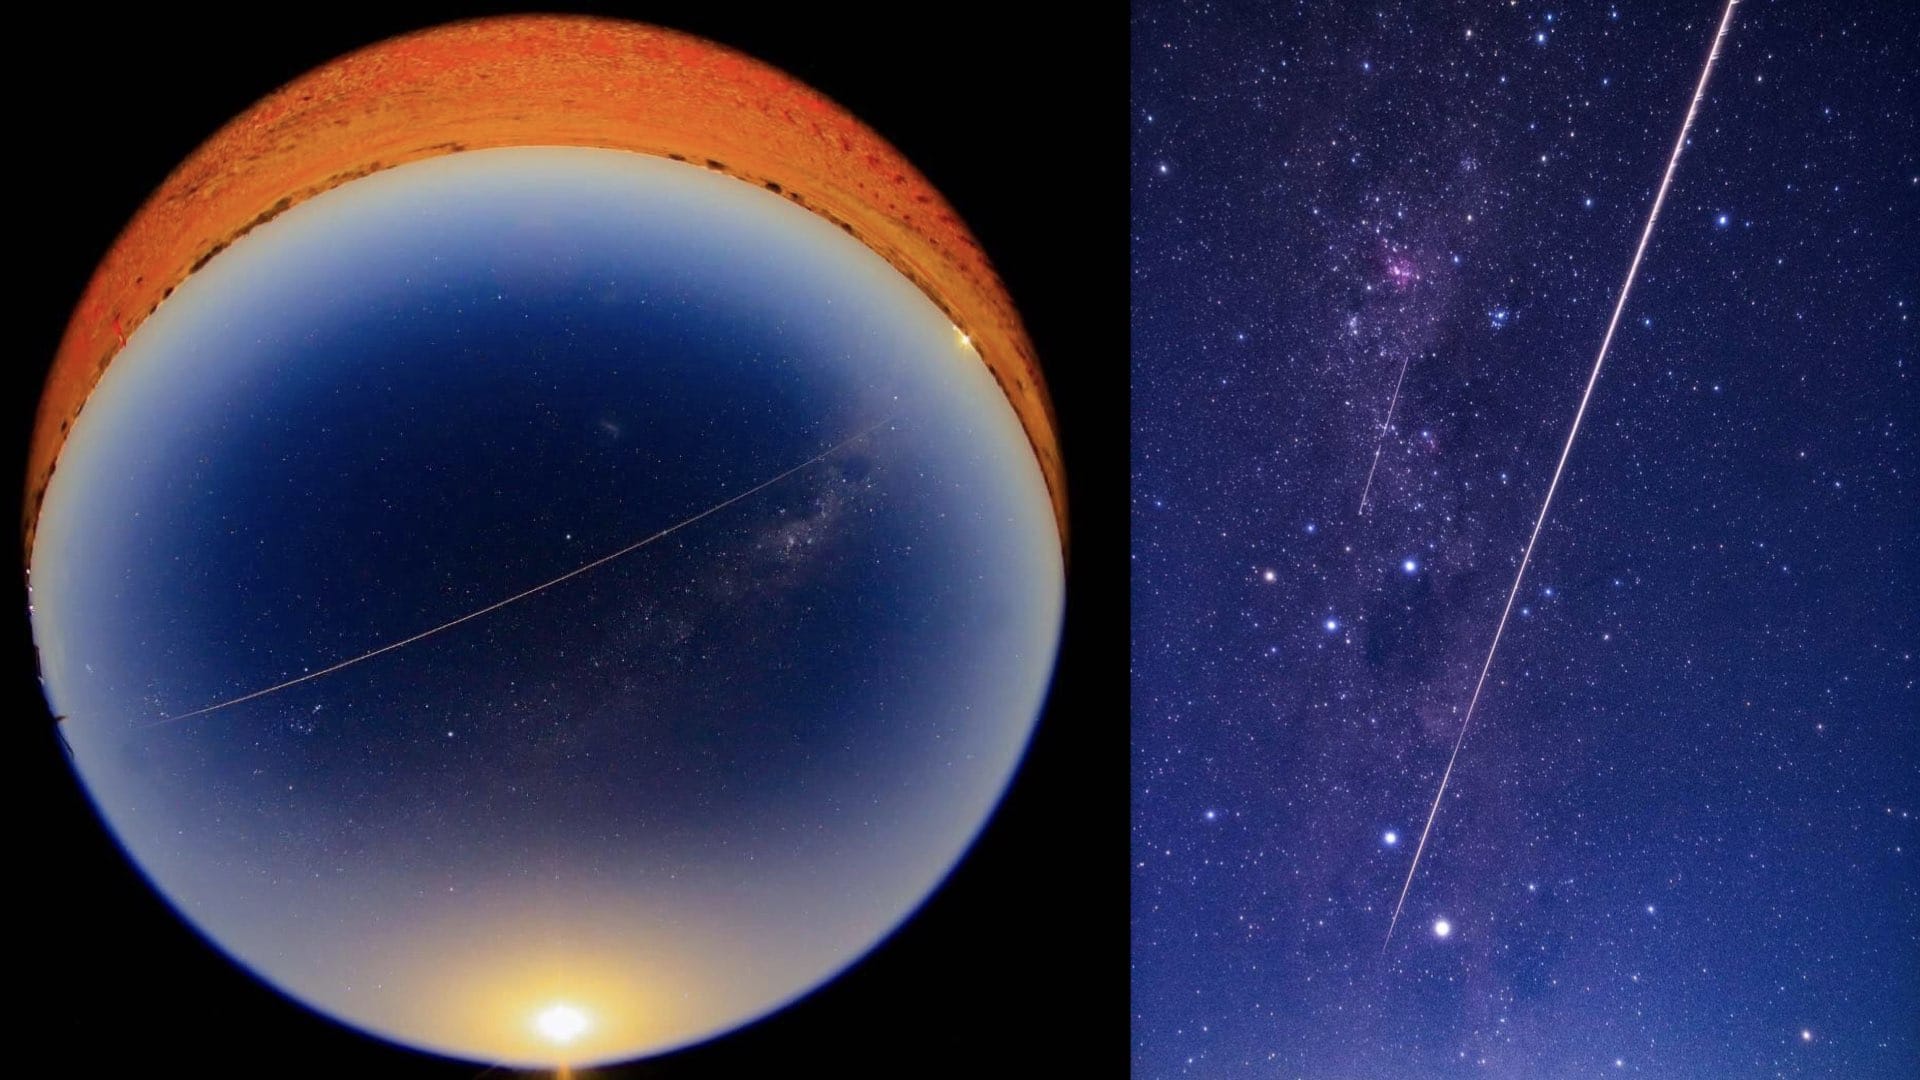 Les échantillons de Ryugu arrivent sur Terre. En rentrant dans l’atmosphère, la capsule d’Hayabusa2 imprime sa marque dans le ciel australien. Crédit : JAXA/Cité de l’espace